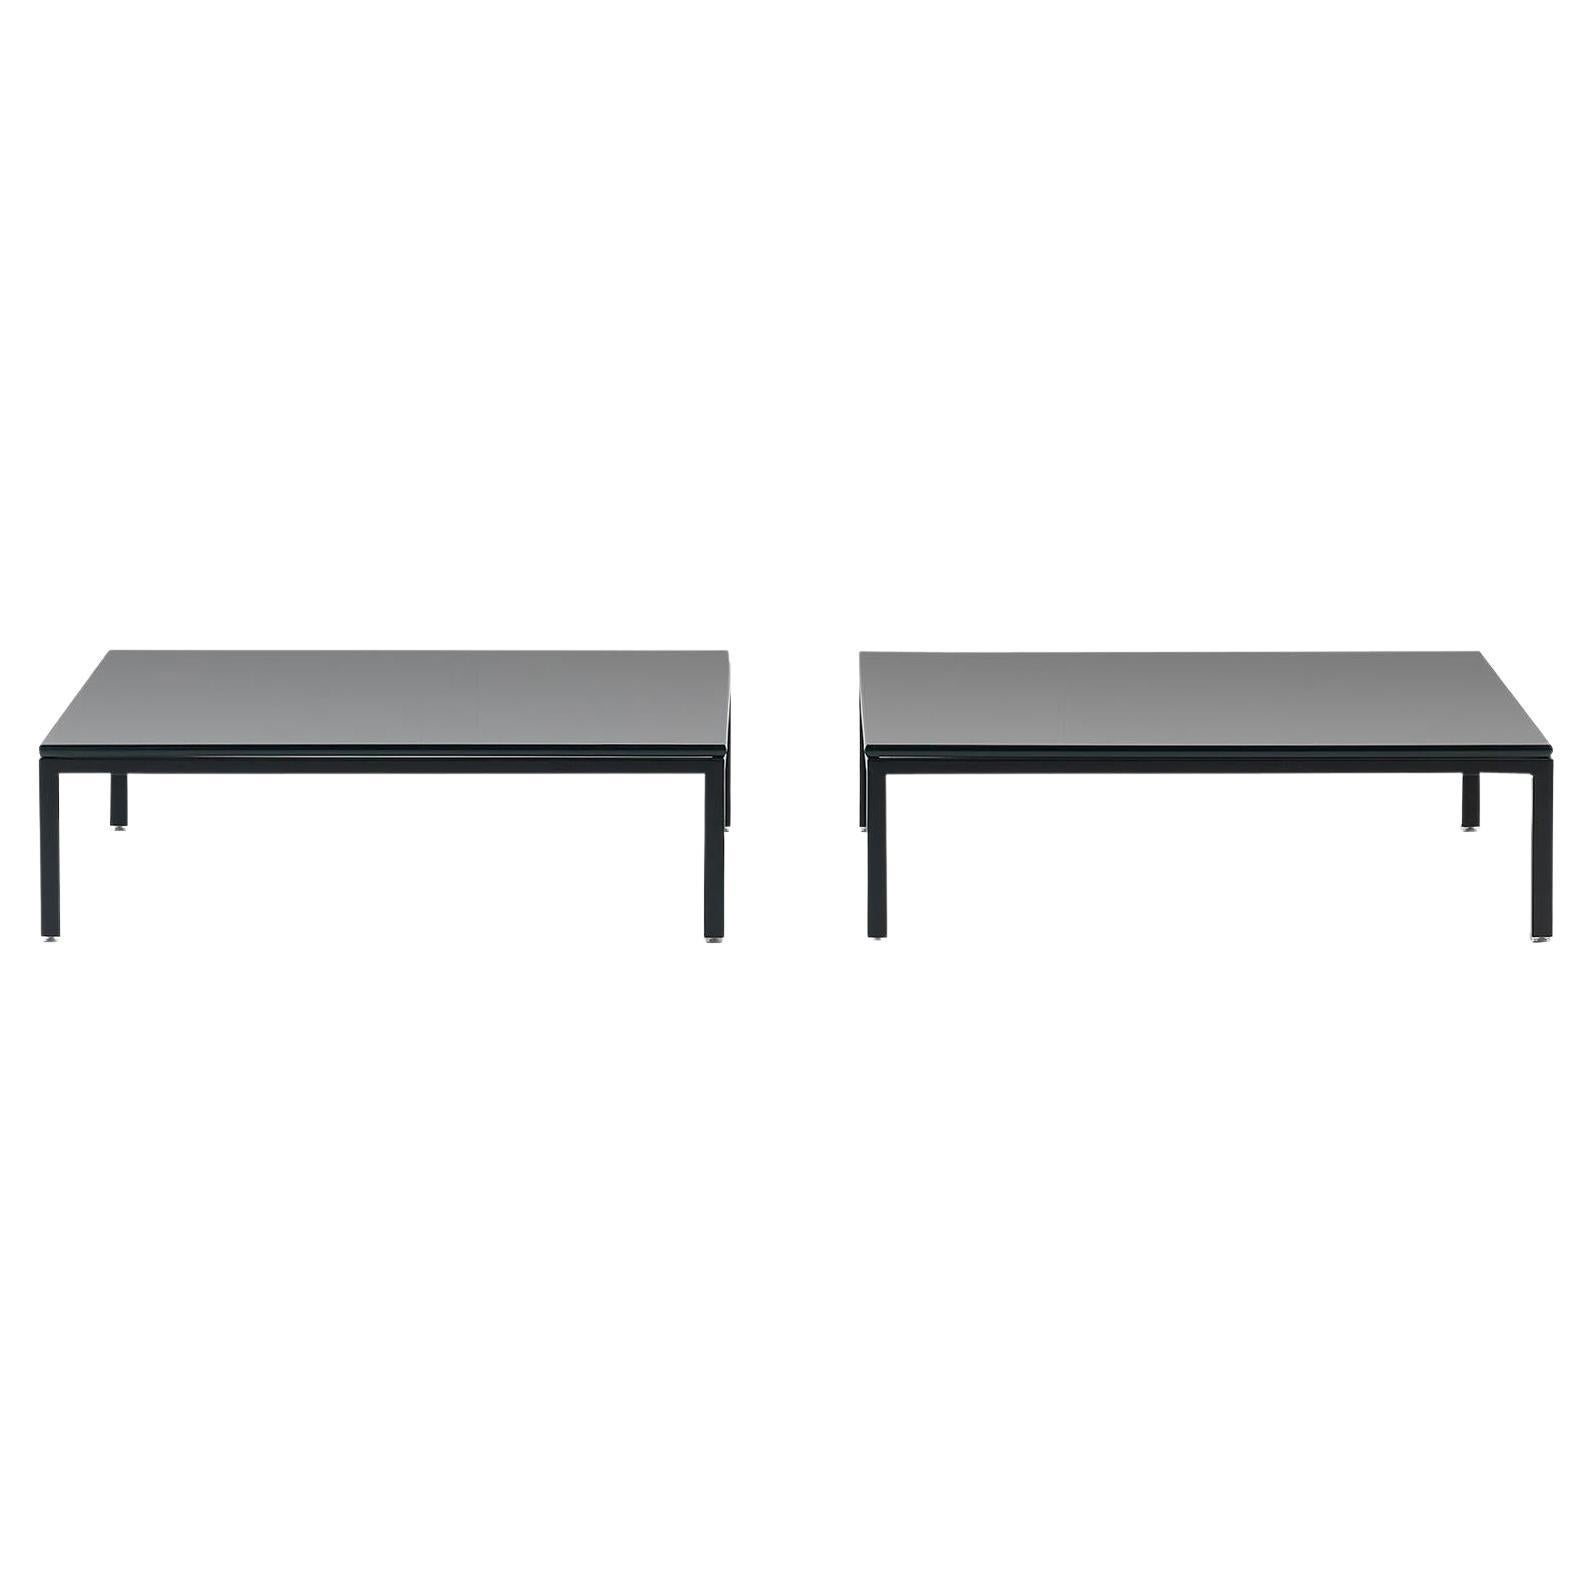 De Sede DS-159 Table with Black Top by De Sede Design Team